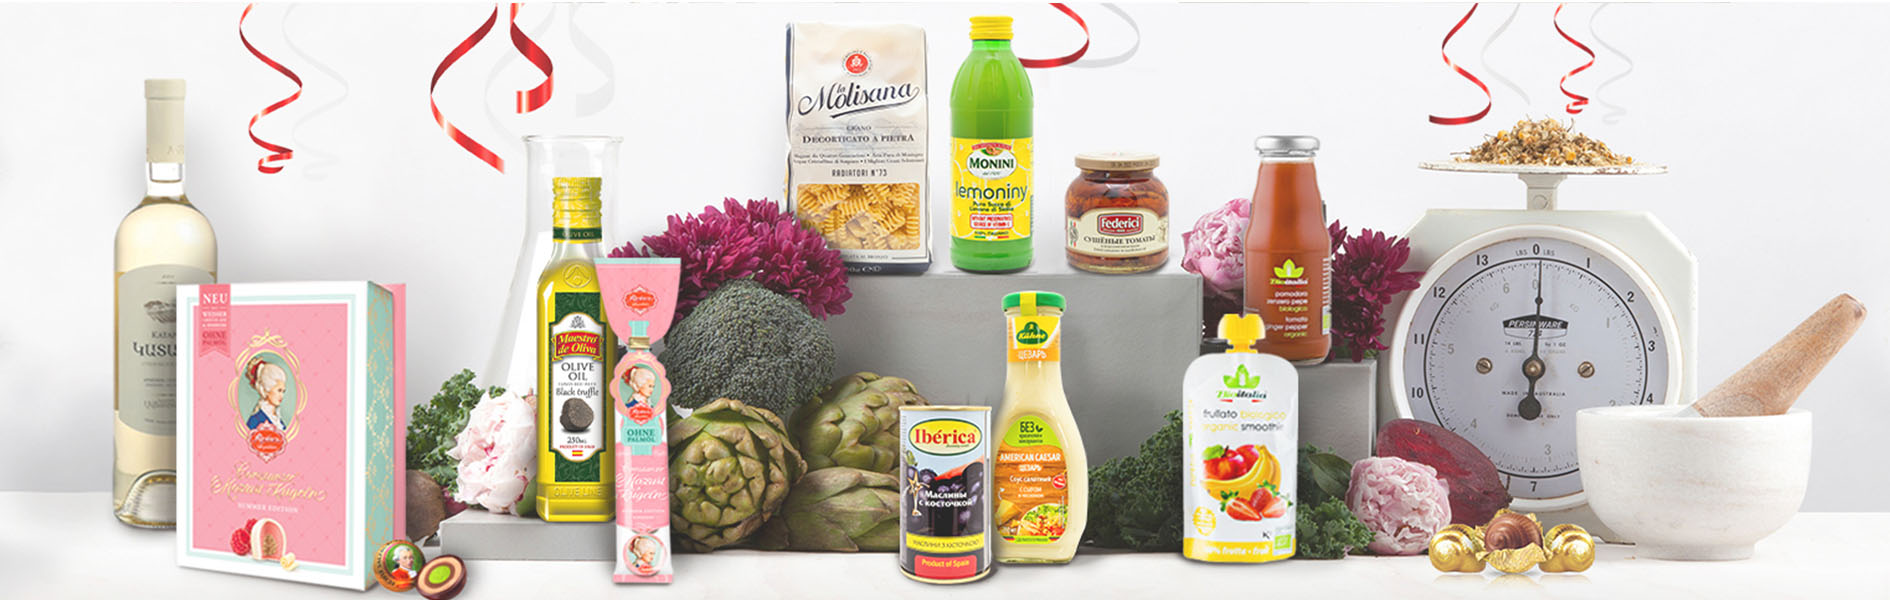 Amelia.shop – продуктовые наборы из органических продуктов